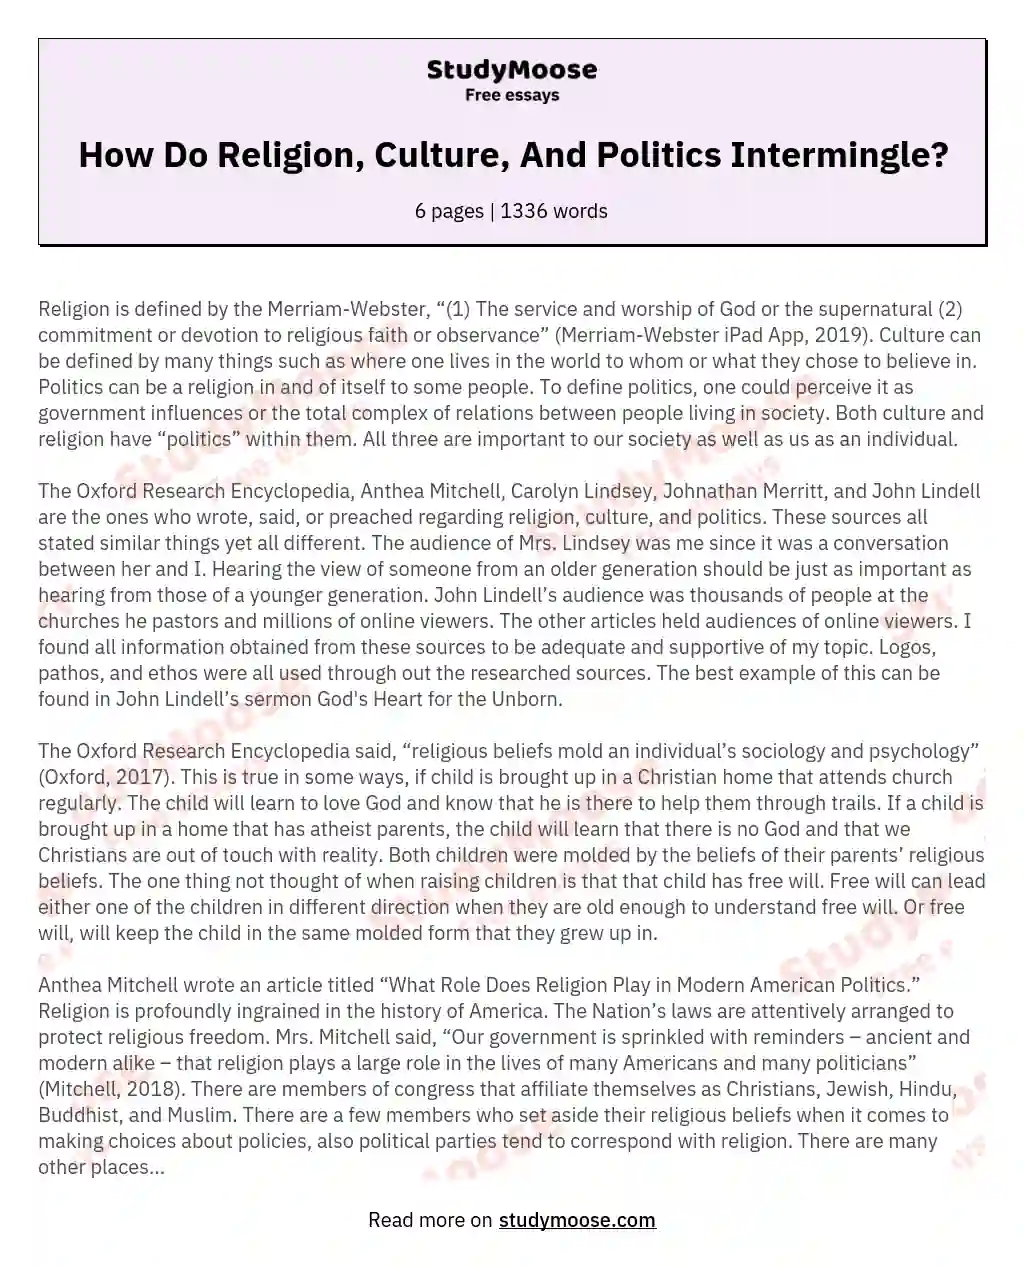 How Do Religion, Culture, And Politics Intermingle? essay